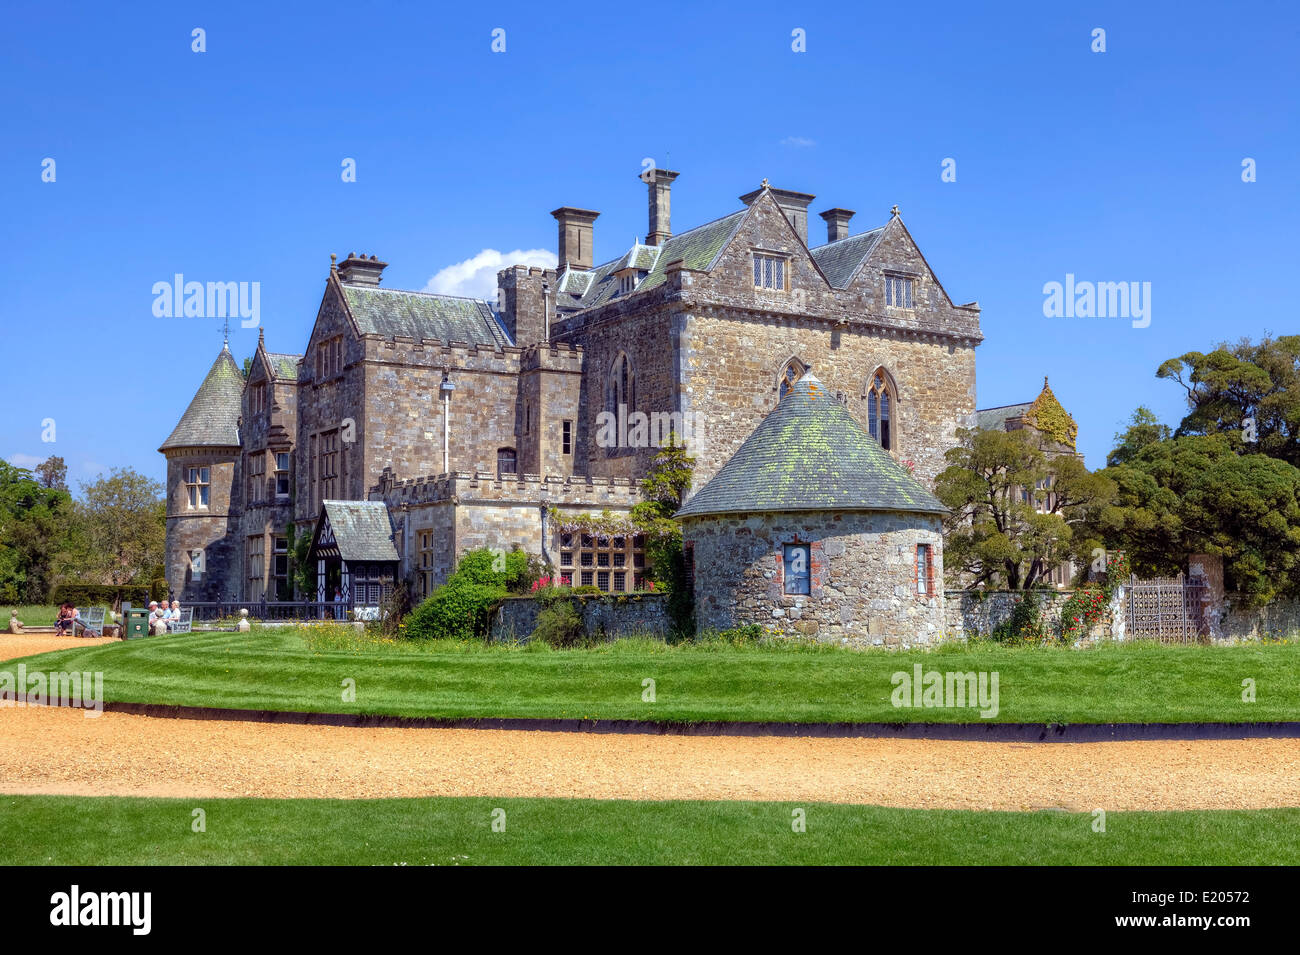 Beaulieu Palace House, Hampshire, England, United Kingdom Stock Photo